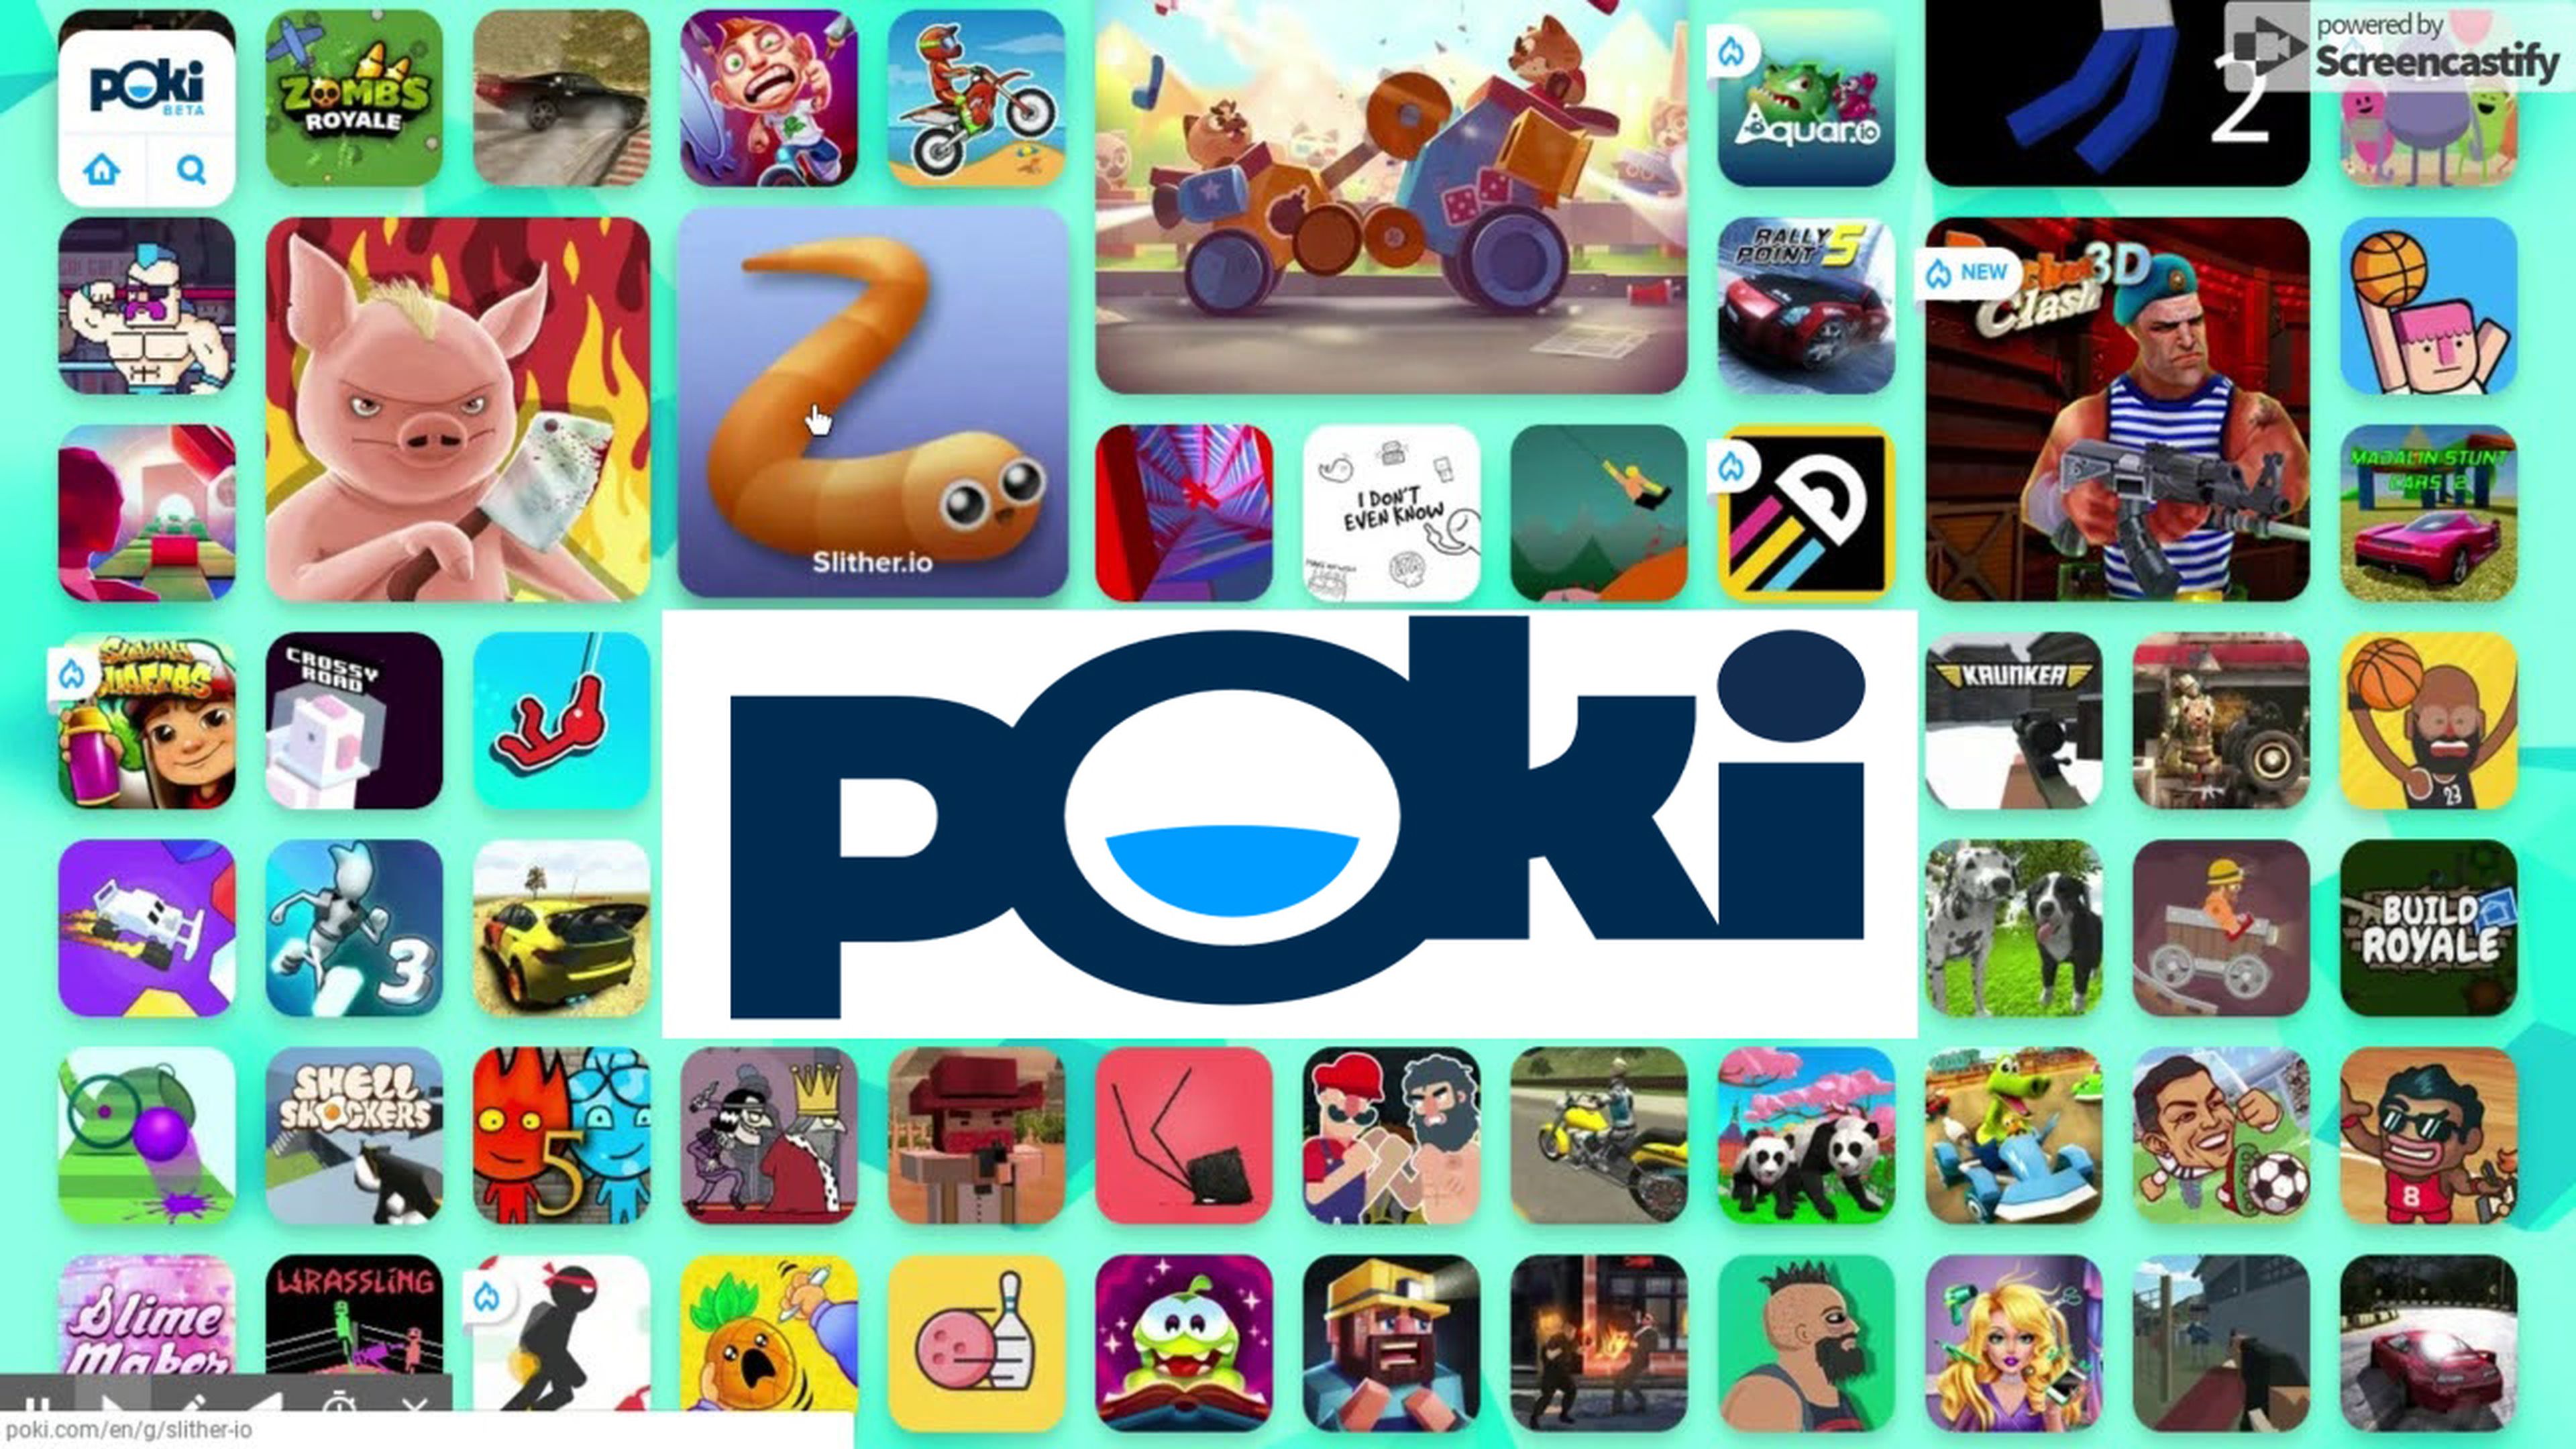 Los 20 mejores juegos POKI para jugar online completamente gratis